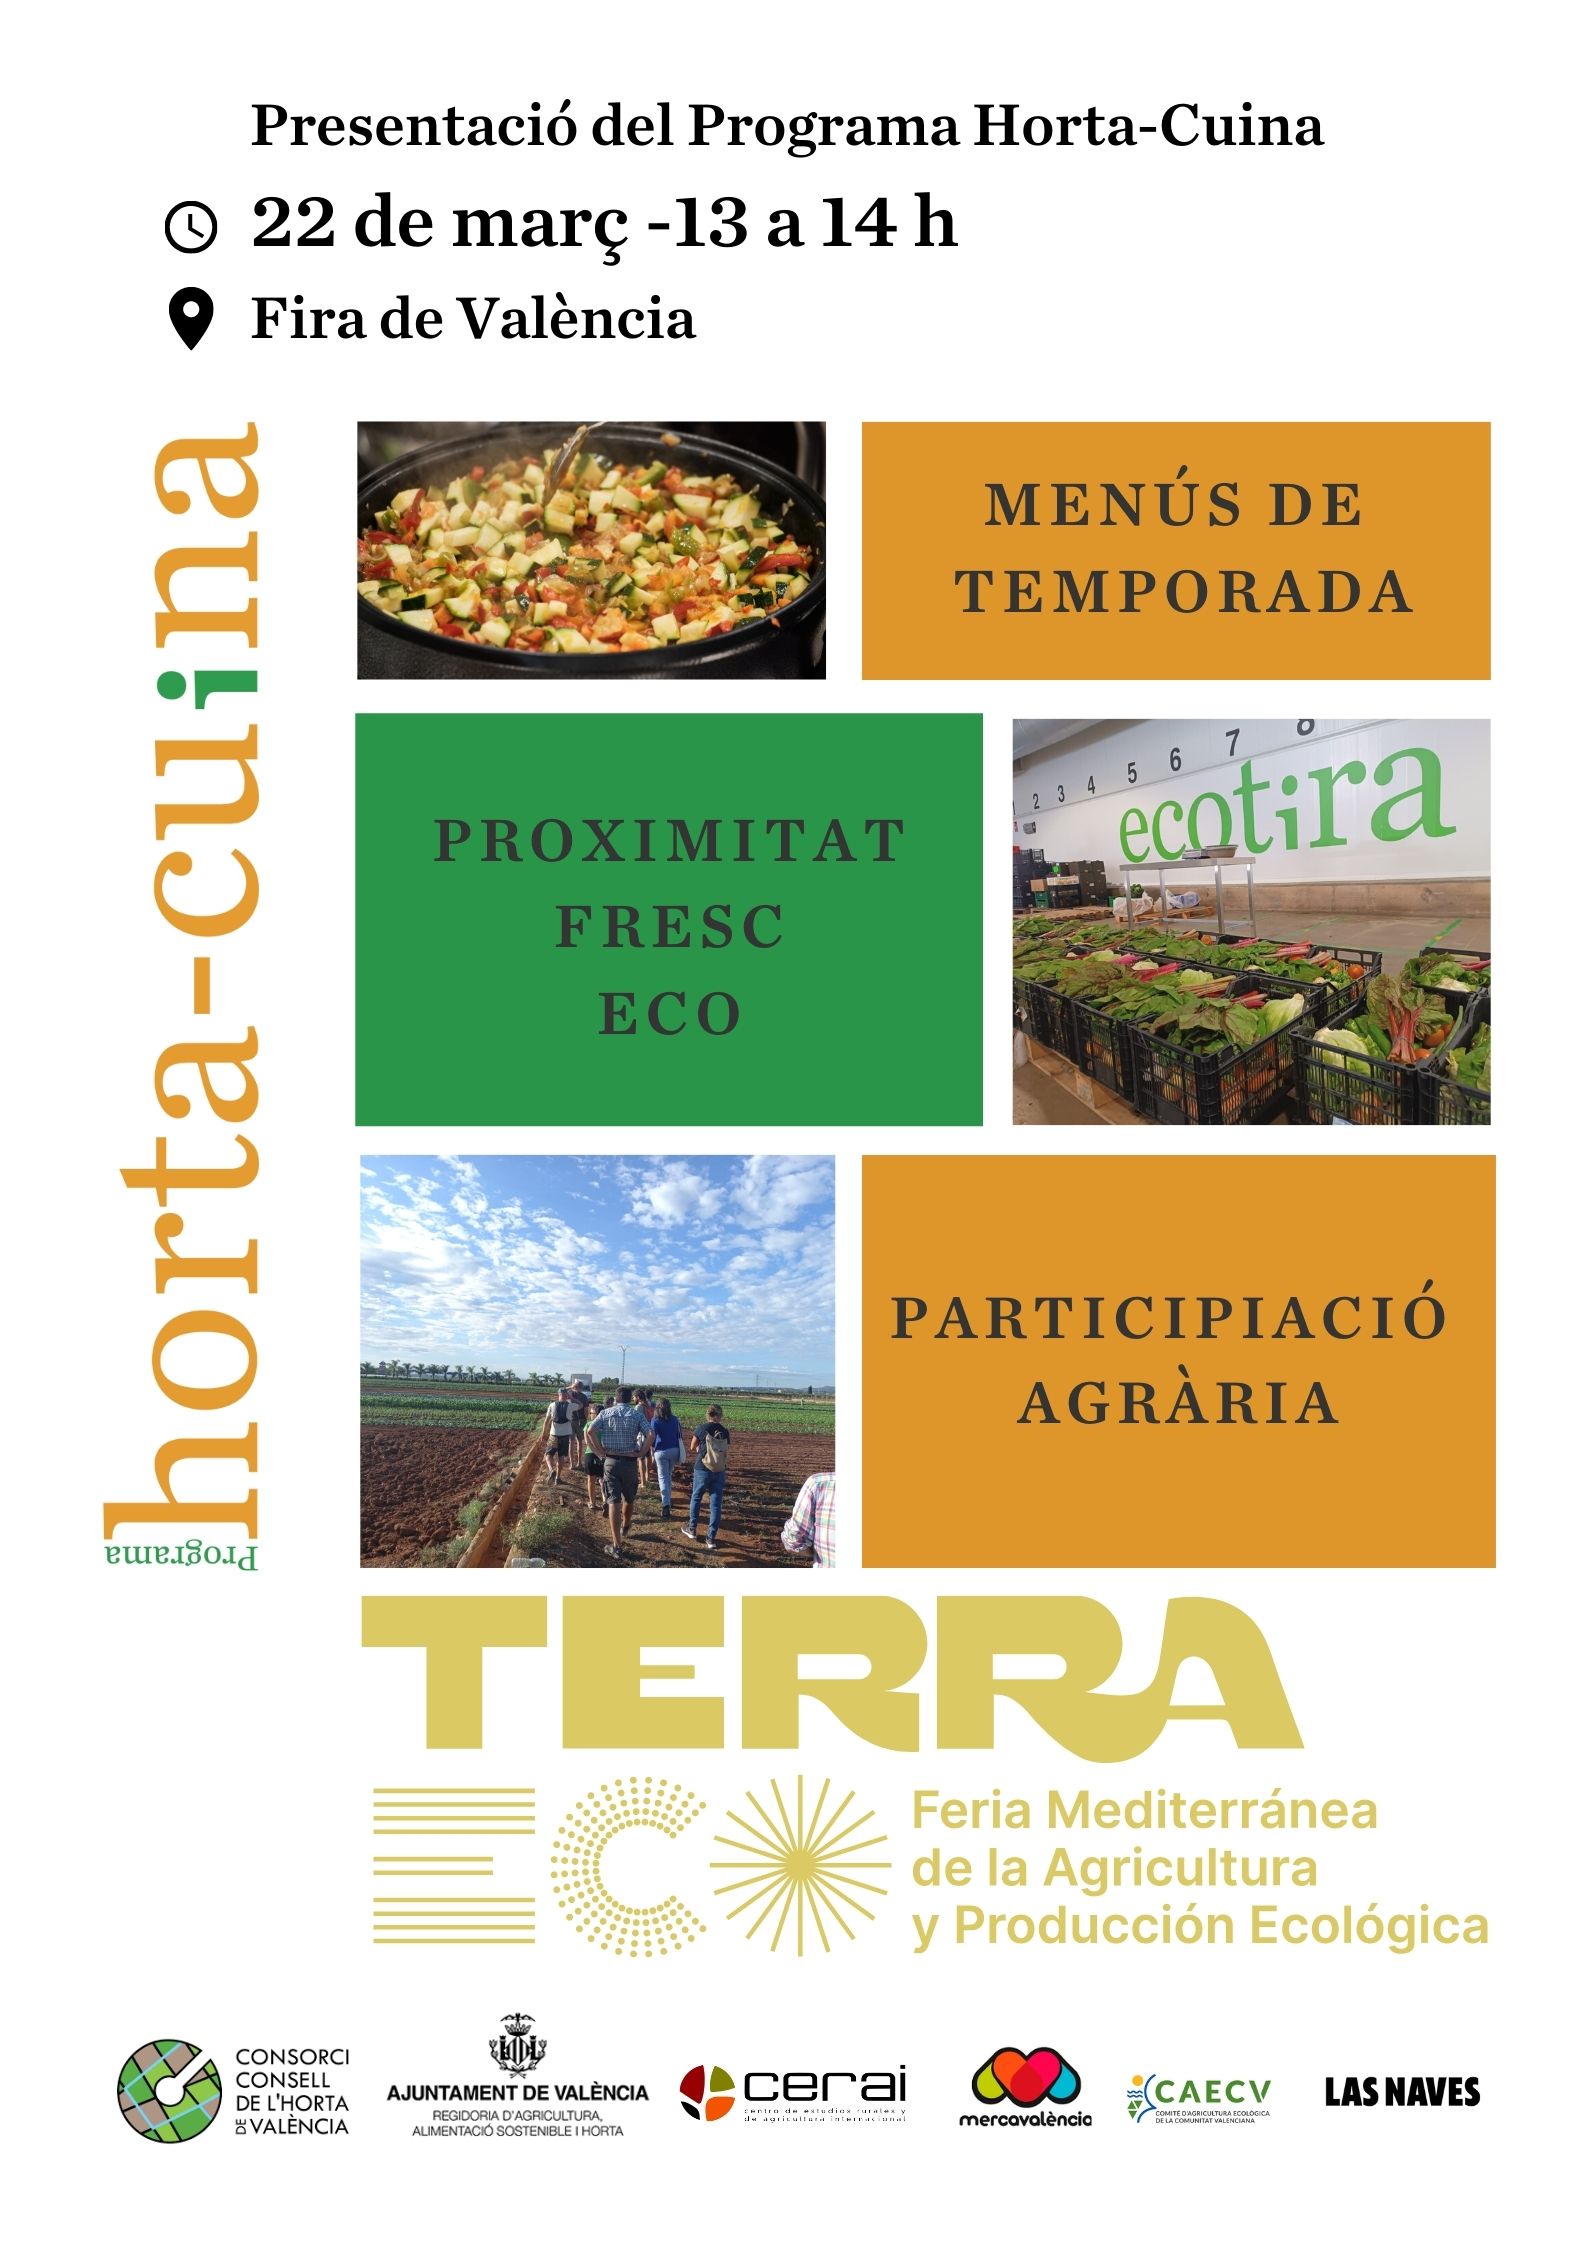 Presentación del Programa Horta-cuina en la Feria Terra Eco el 22 de marzo